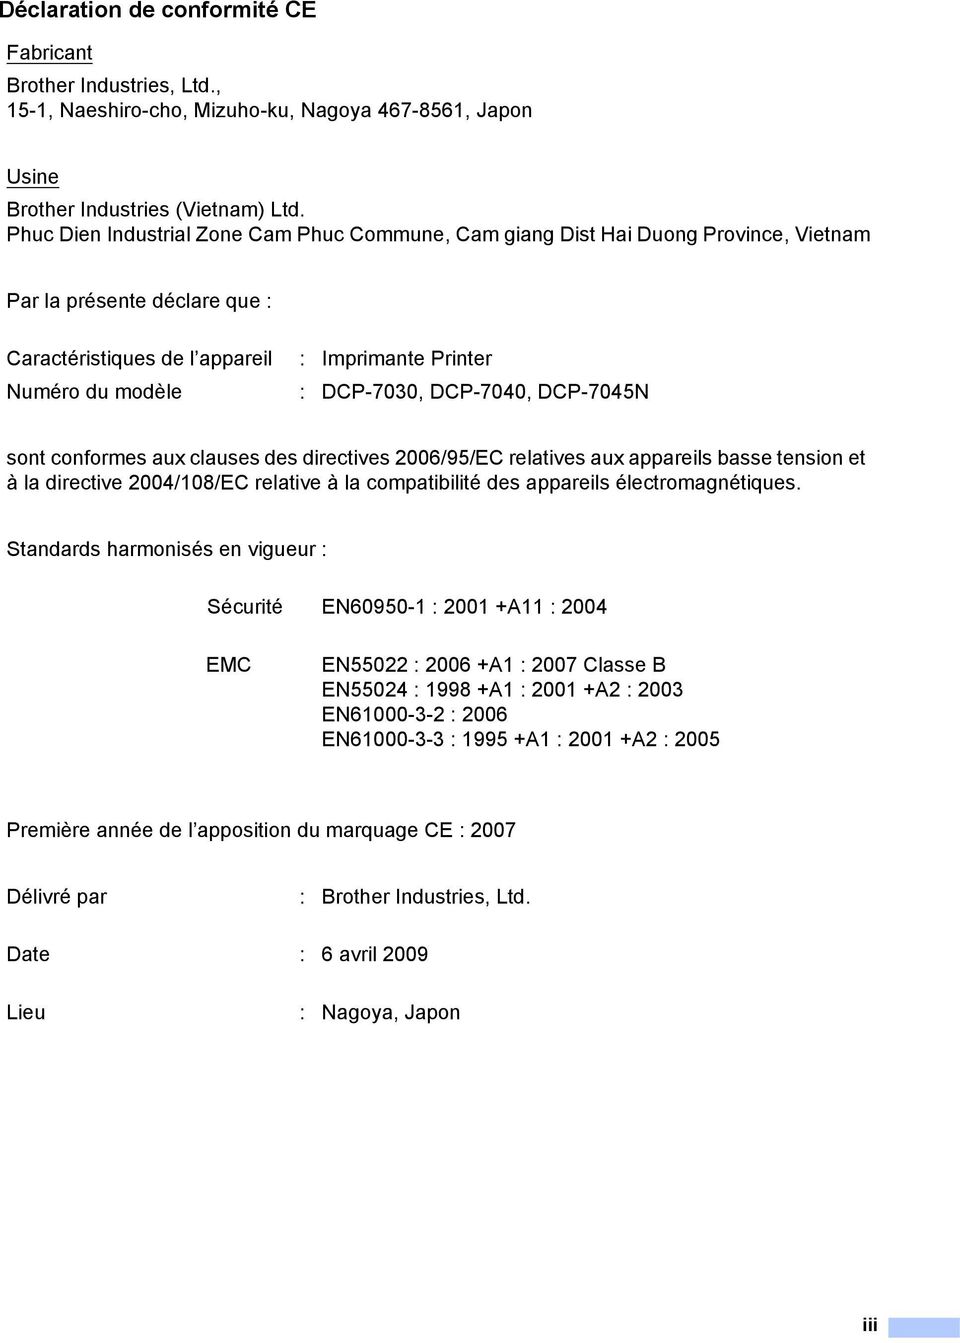 DCP-7040, DCP-7045N sont conformes aux clauses des directives 2006/95/EC relatives aux appareils basse tension et à la directive 2004/108/EC relative à la compatibilité des appareils